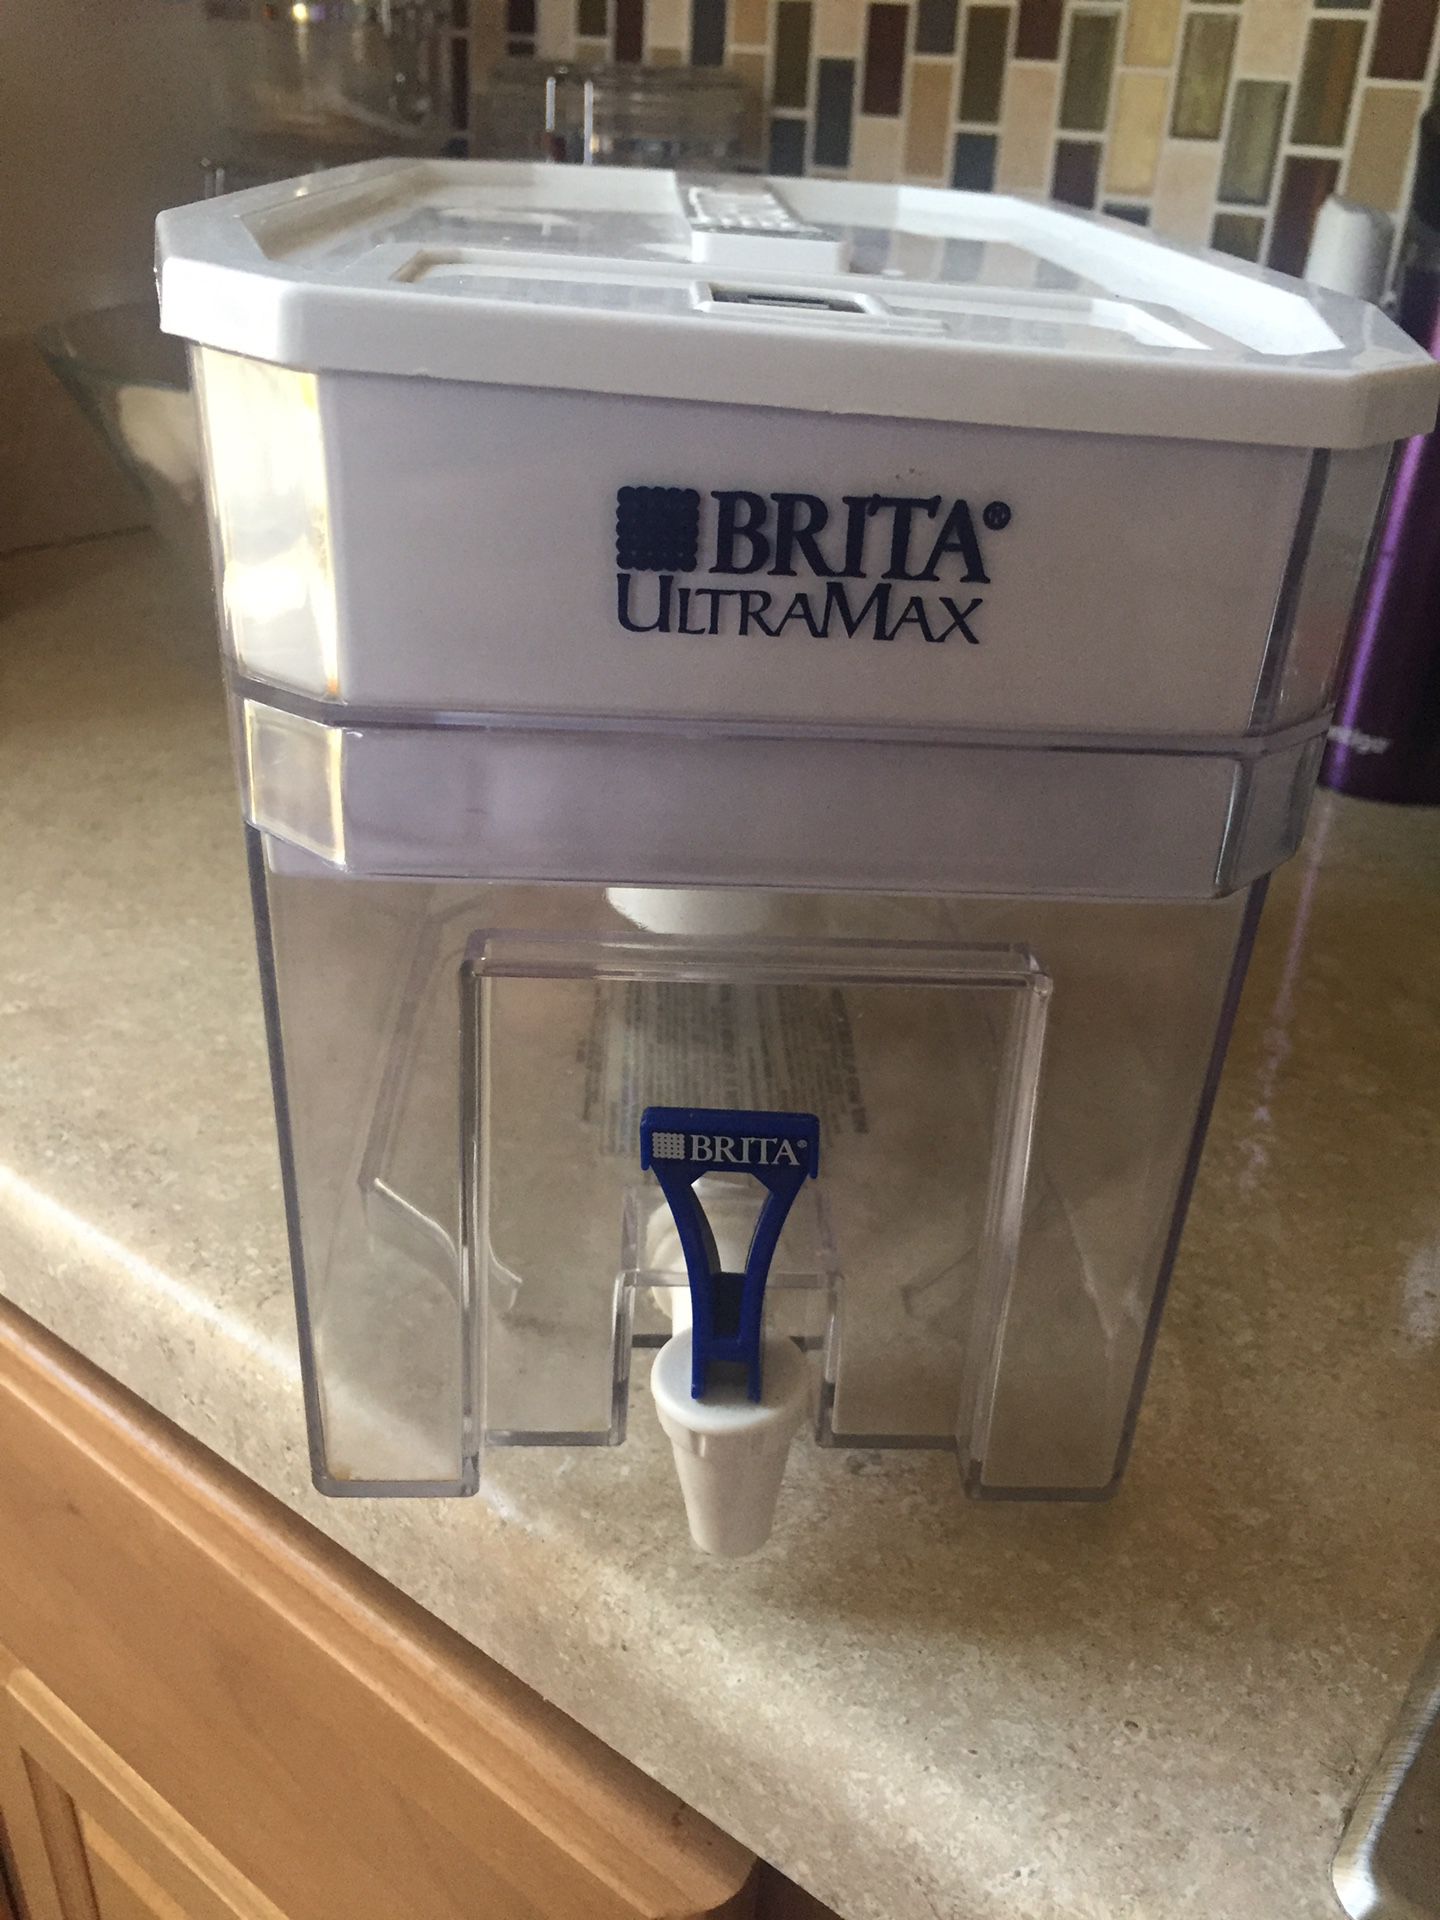 Brita Ultramax water dispenser